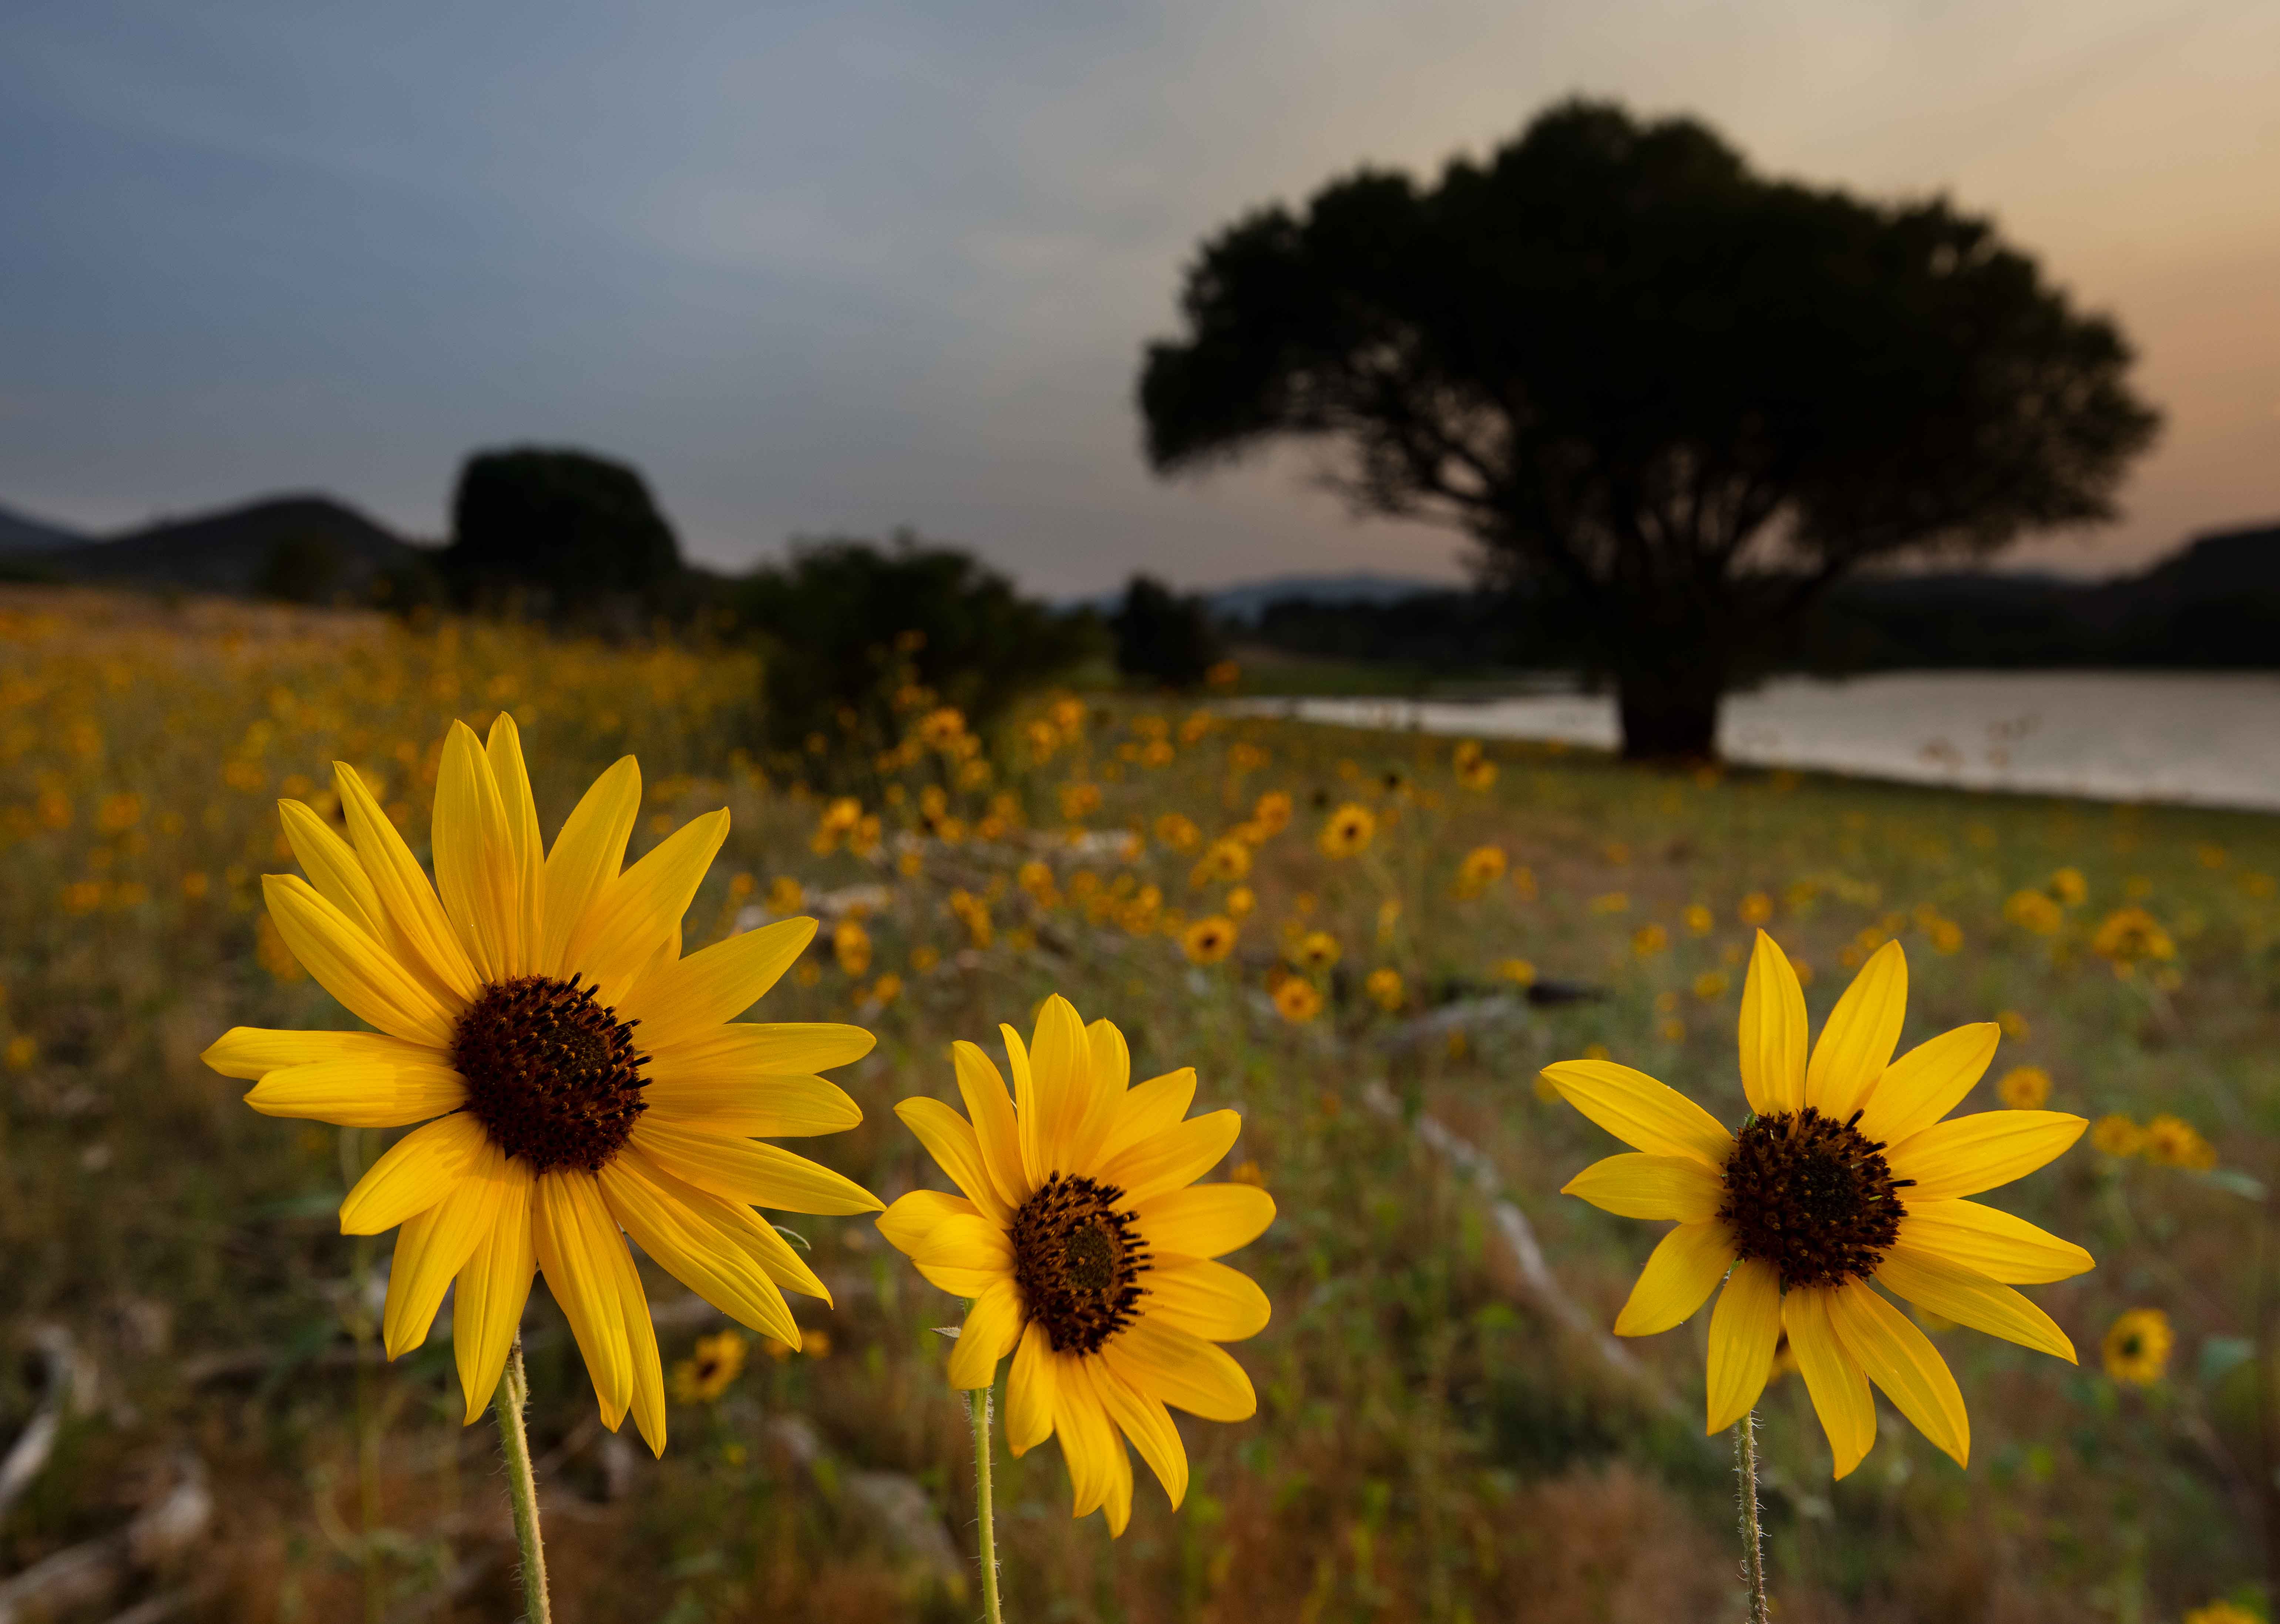 Wild sunflowers at Watson Lake on the edge of Prescott, Arizona